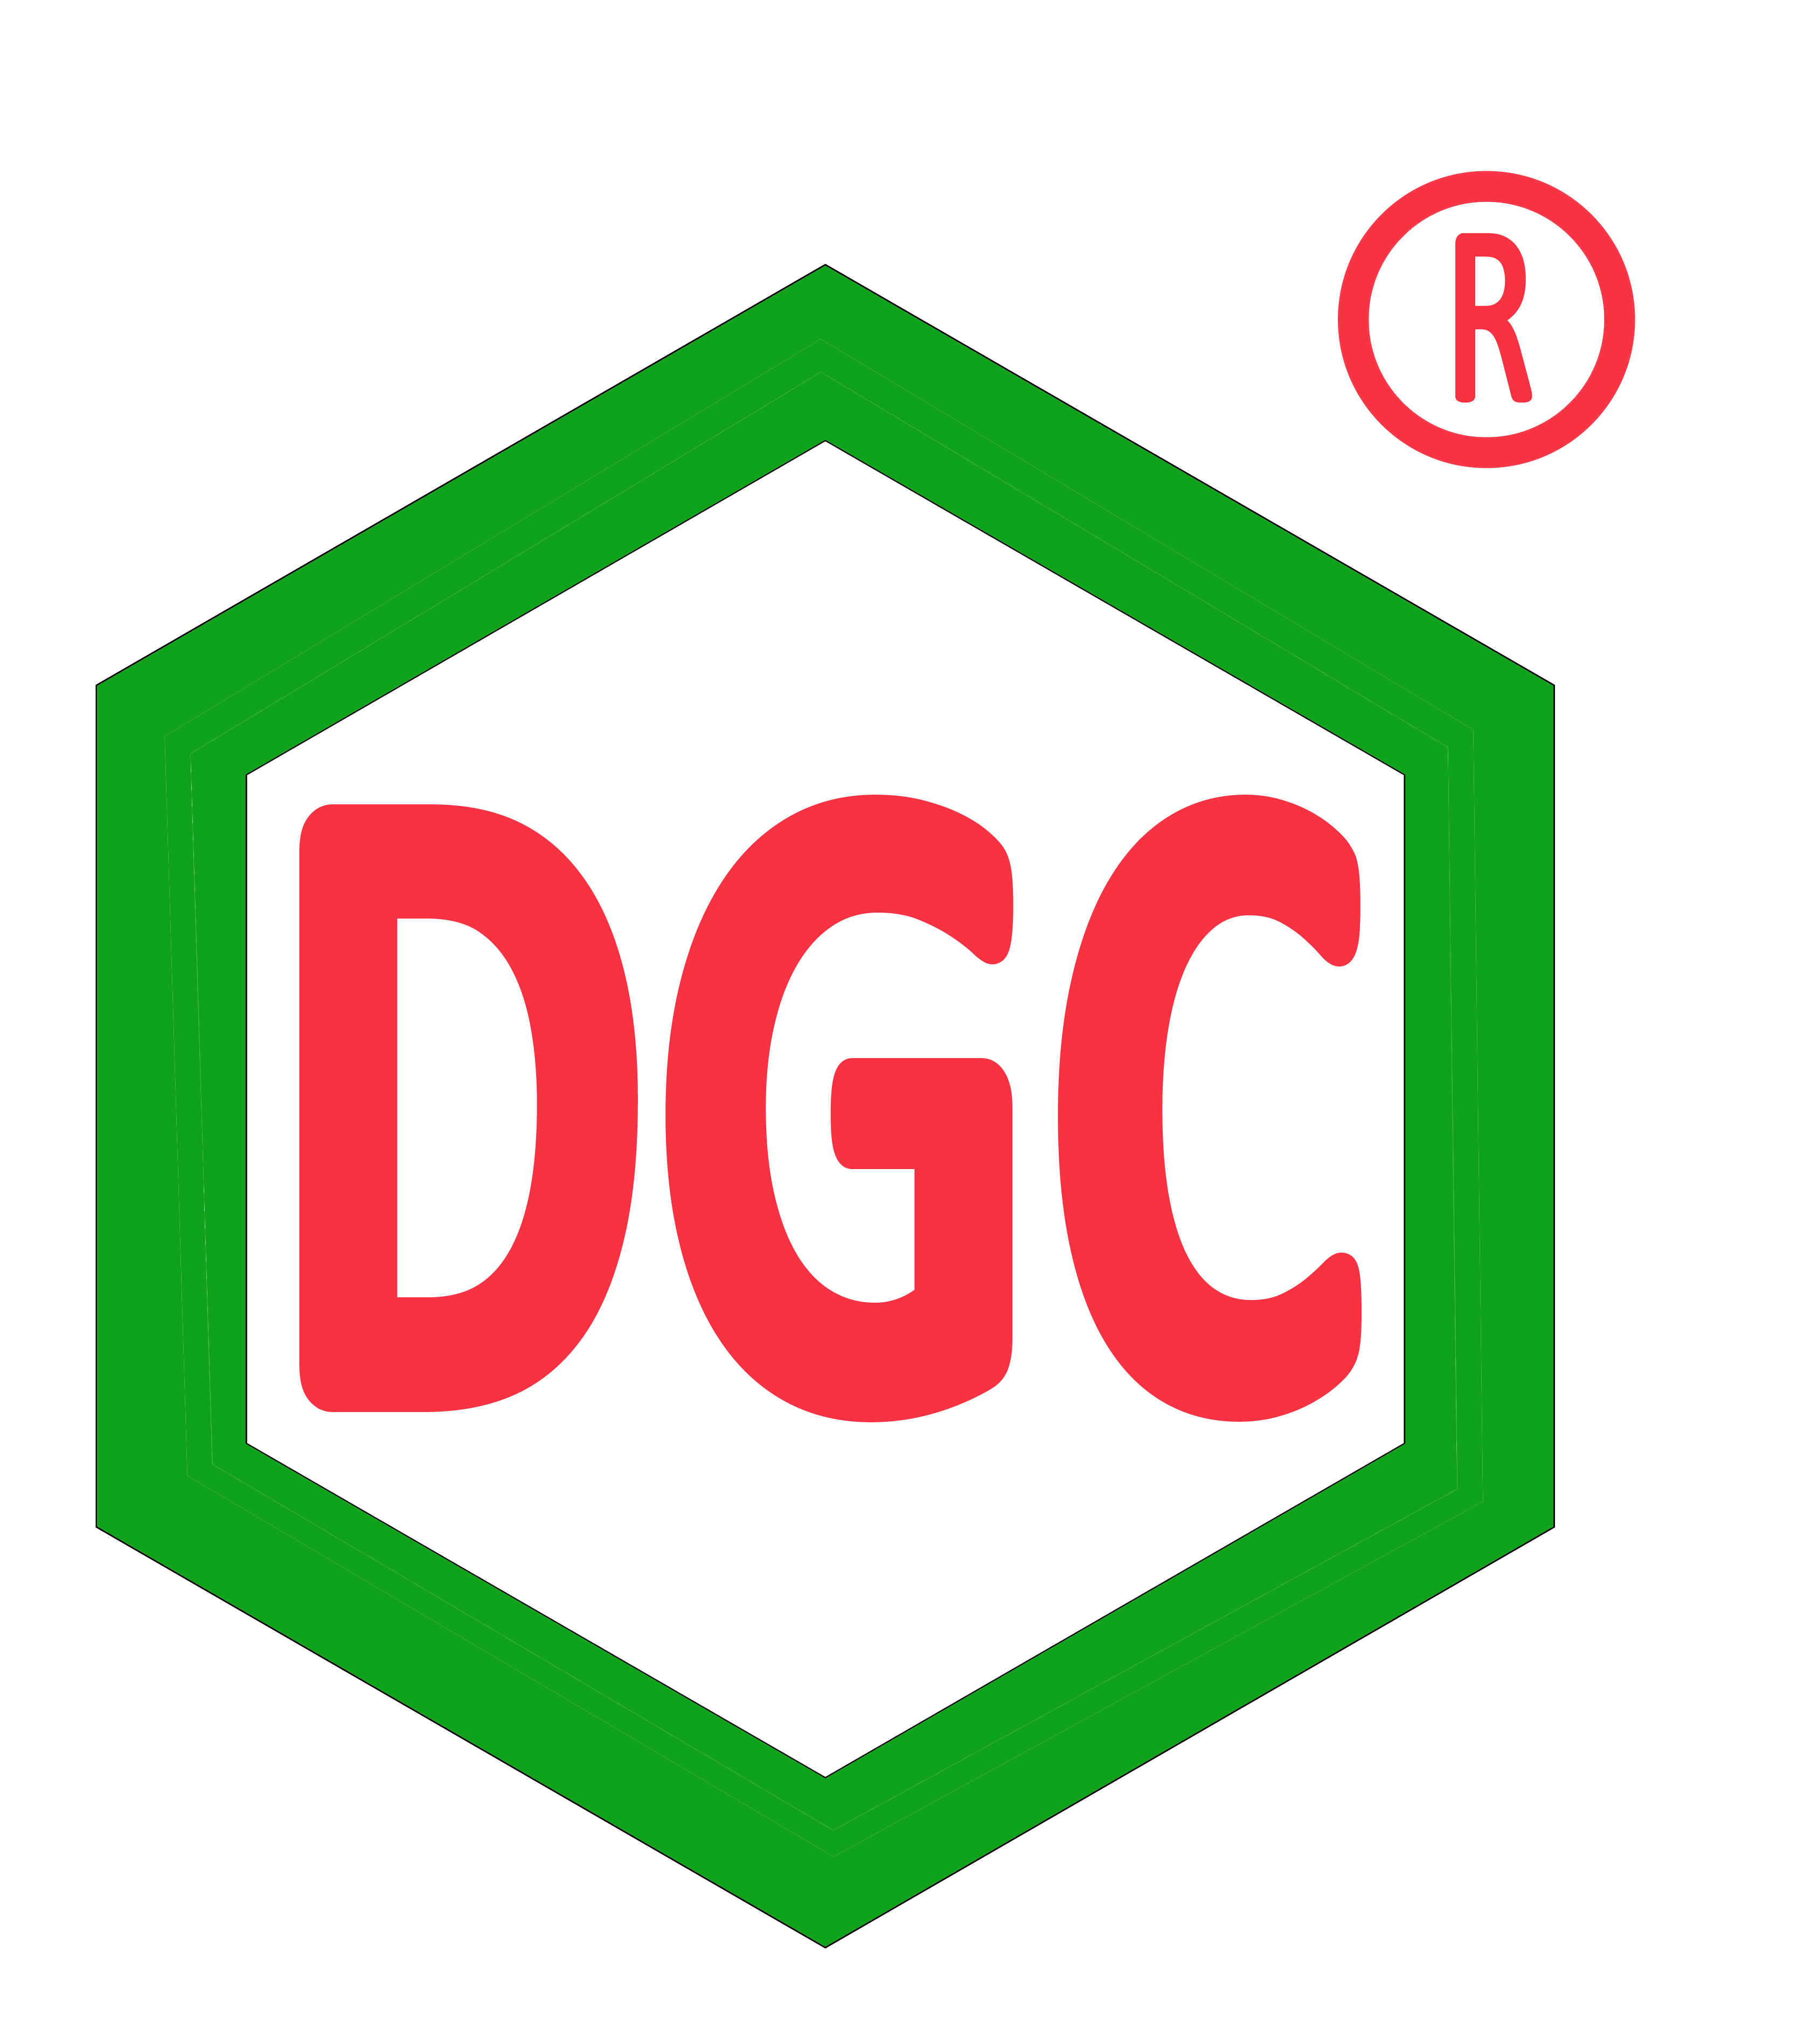 DGC: 11/07 GDKHQ nhận cổ tức bằng cổ phiếu tỷ lệ 18.5%